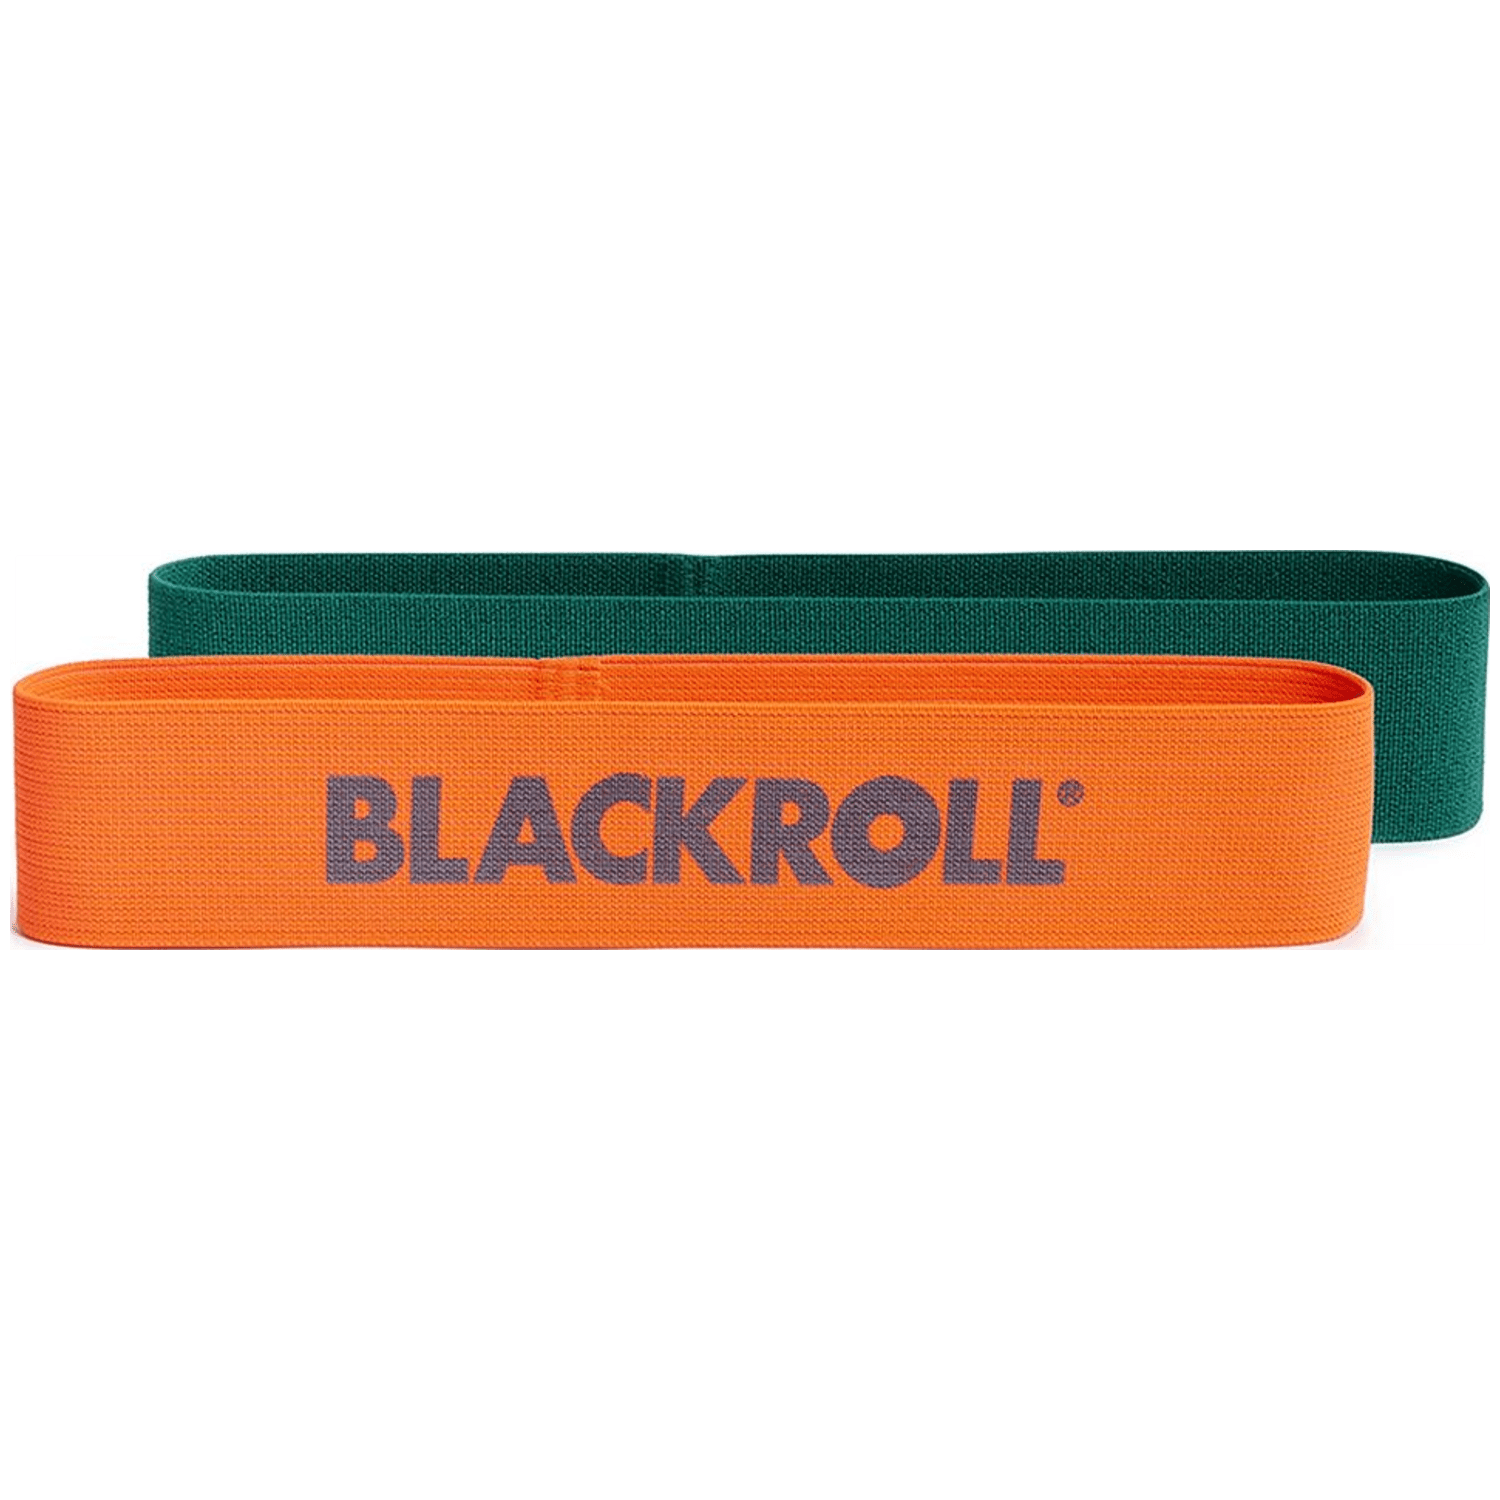 Blackroll Loop Band Unisex Fitnessgerät